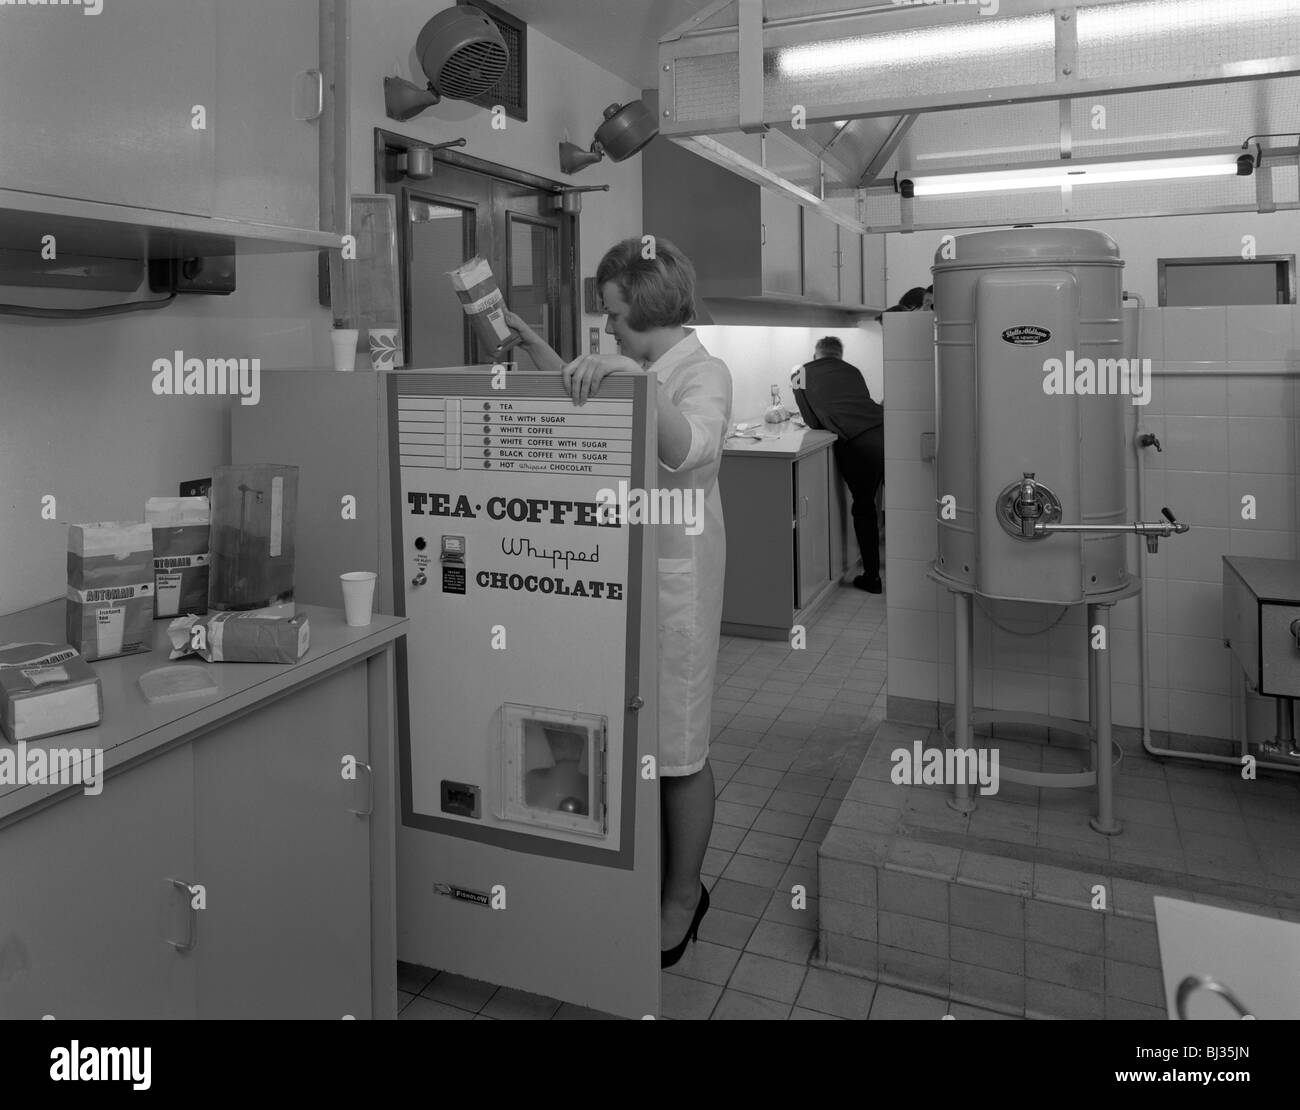 Chargement d'un distributeur de boissons à une cuisine expérimentale à Sheffield, South Yorkshire, 1966. Artiste : Michael Walters Banque D'Images